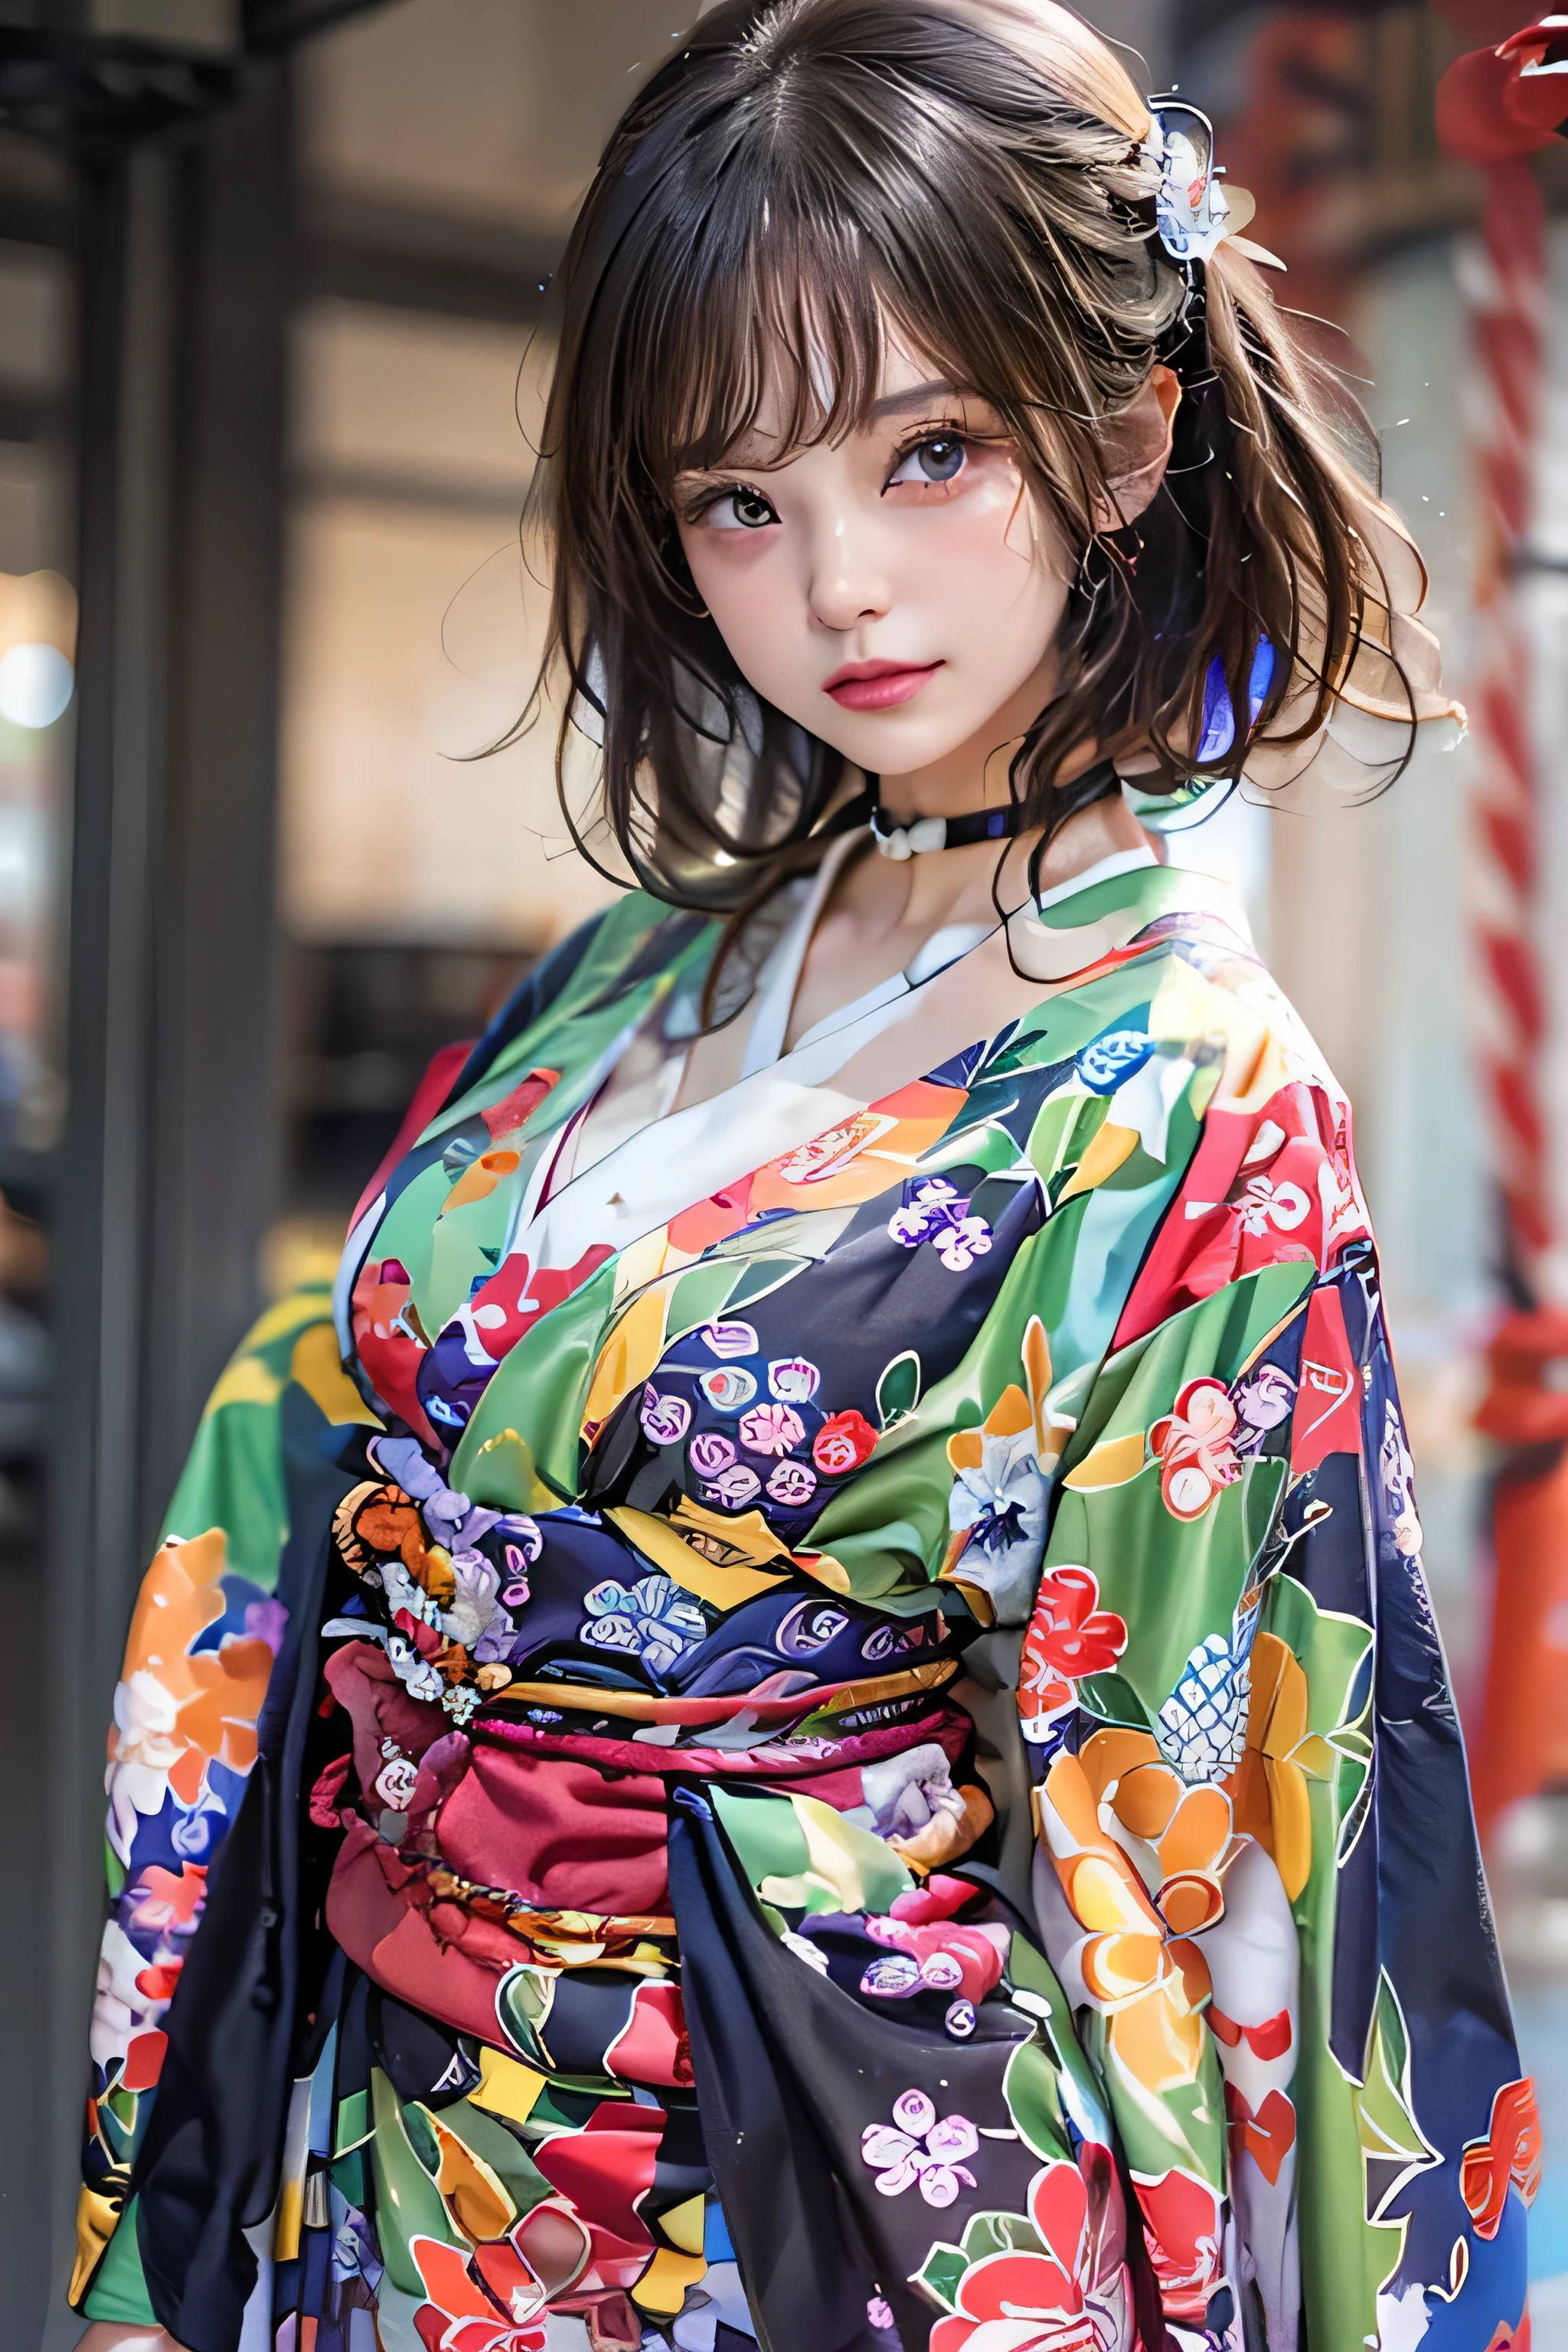 (высшее качество,Качество изображения 8k,шедевр:1.3,высокое разрешение,стол:1.2), передний план:0.8, Глядя на зрителя, 23-летняя женщина, смотрю в камеру,(японское платье, кимоно:1.4,общий:1.2,с цветочным узором, колье:1.4),(короткие волосы:1.2,Темноволосый,красивые волосы), (Переулок:1.3), кимоно comes off,бедро видно,я вижу трусики,Красивое лицо,Кинематографический,(Молодые кумиры глубокой печати, Молодой худой кумир глубокой печати, изысканный идол глубокой гравюры),(детальное безупречное лицо),нормальные руки,Нормальный палец,нормальные ноги